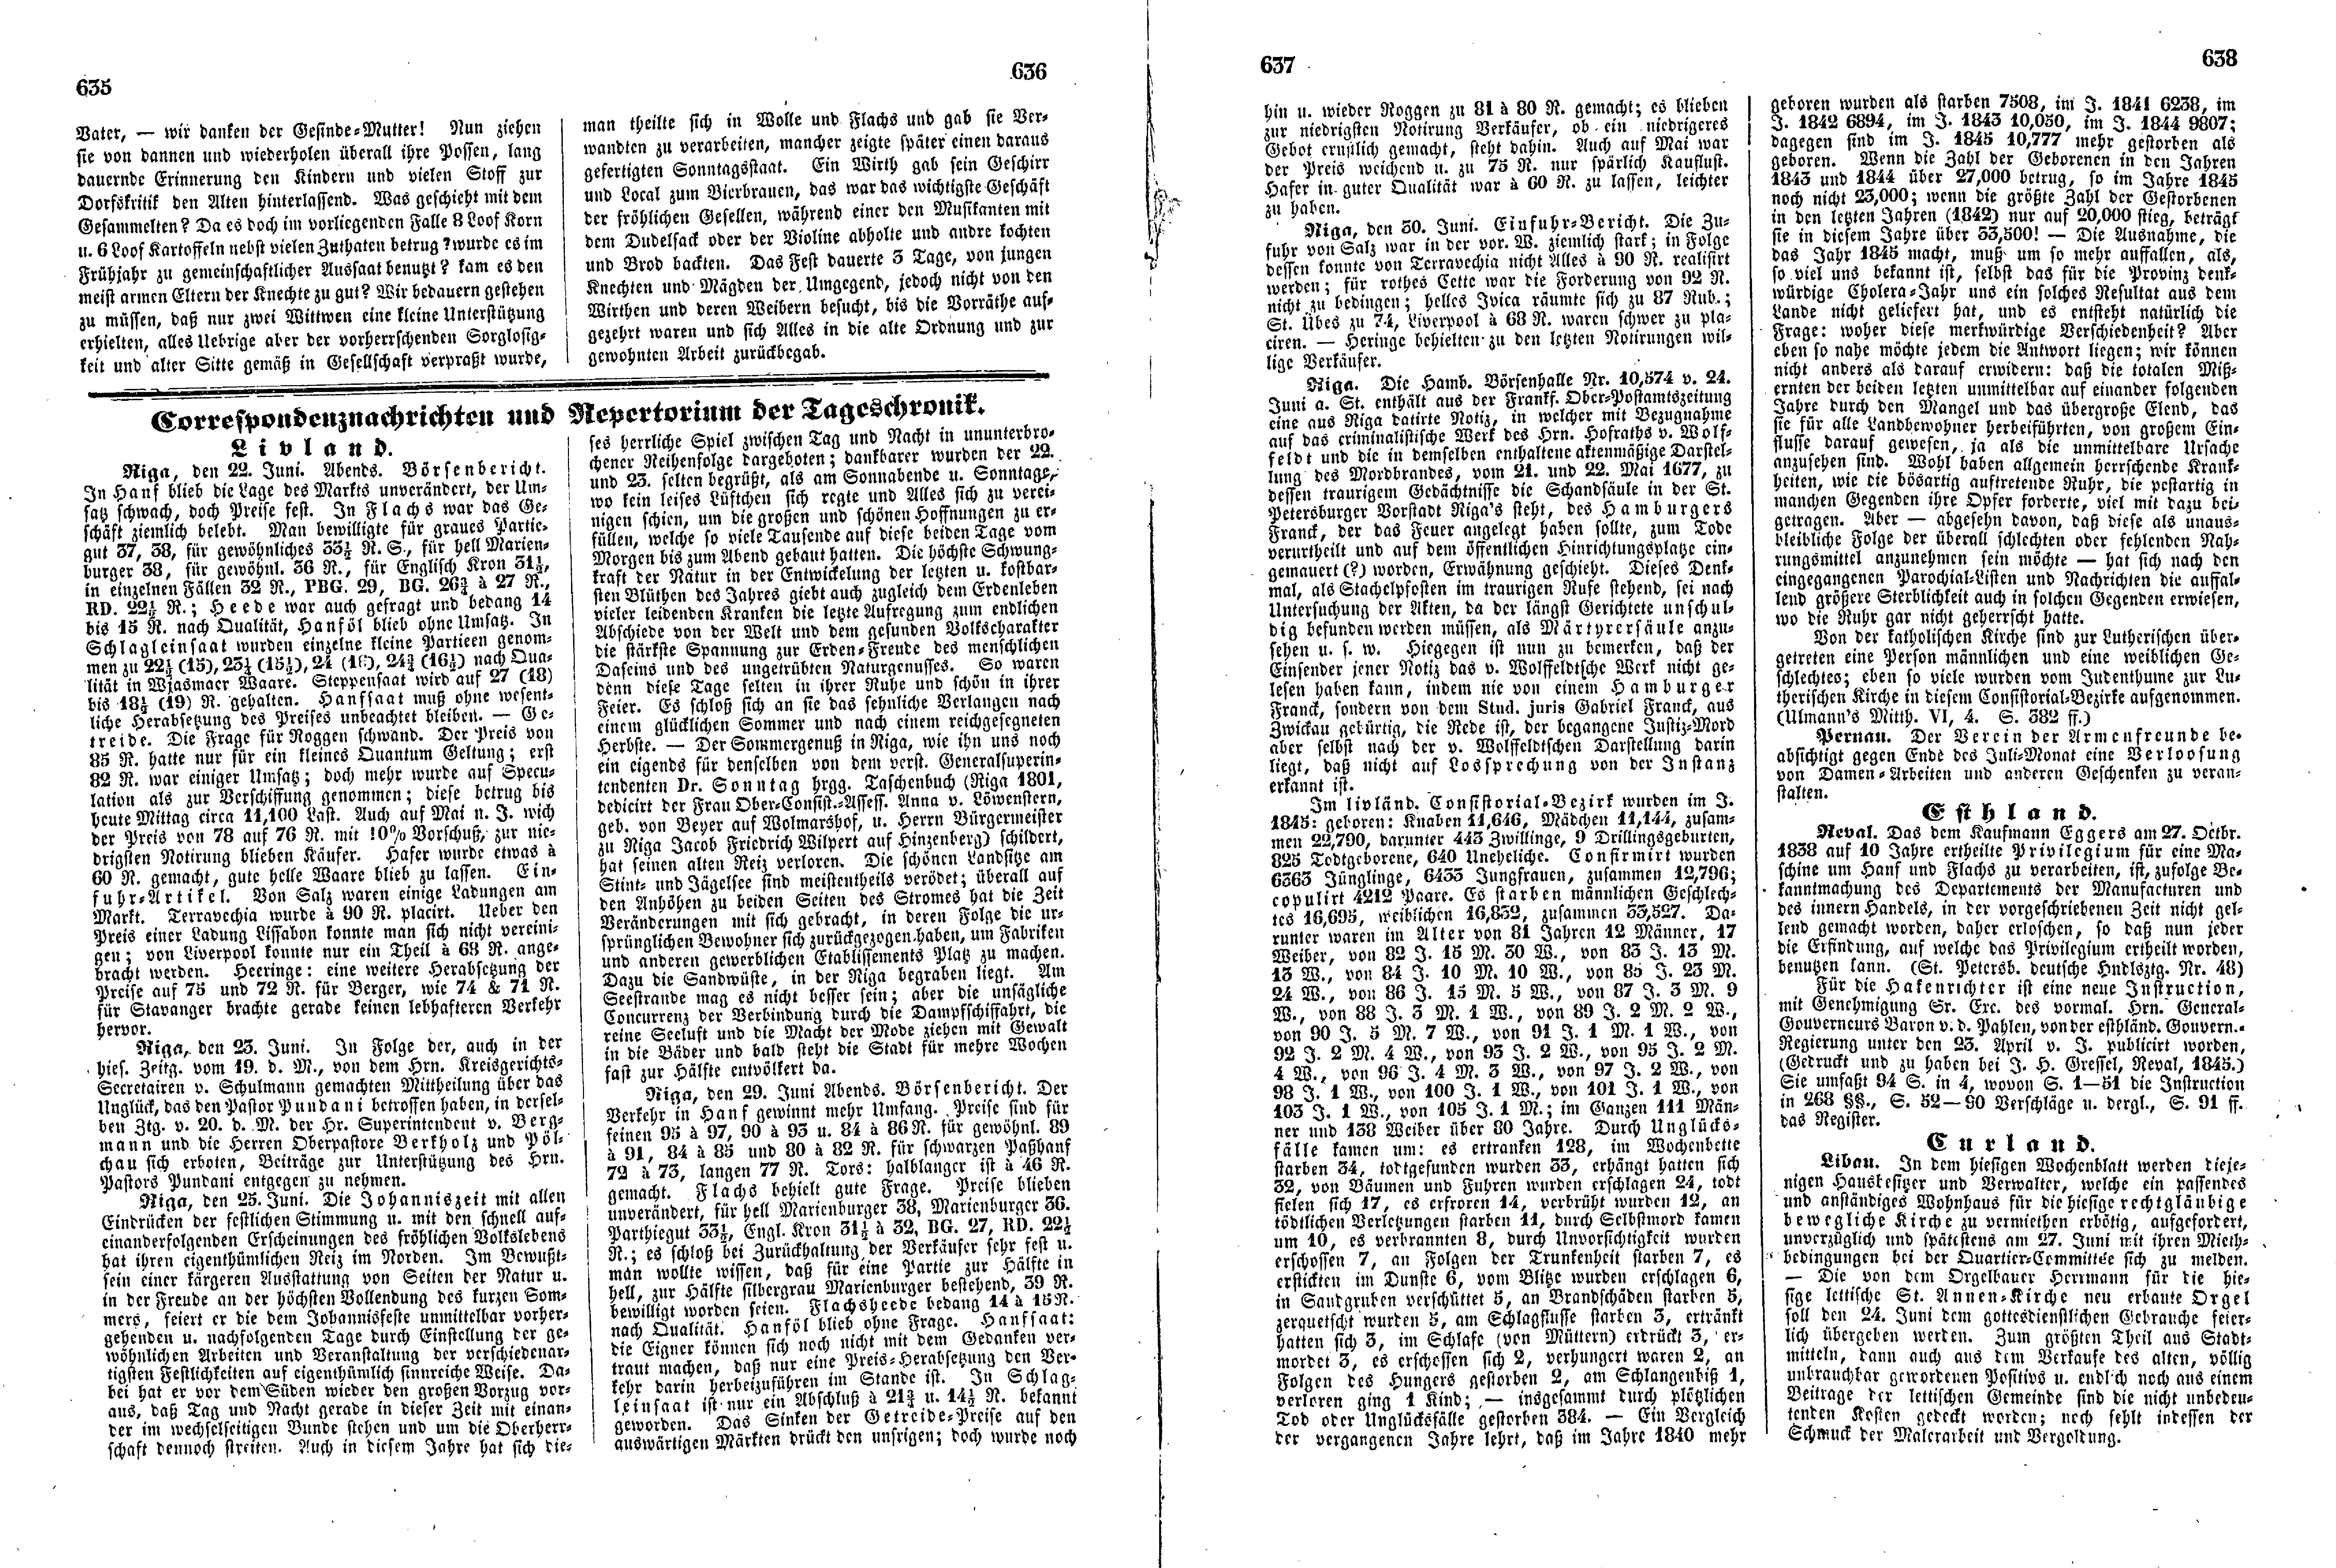 Das Inland [11] (1846) | 164. (635-638) Основной текст